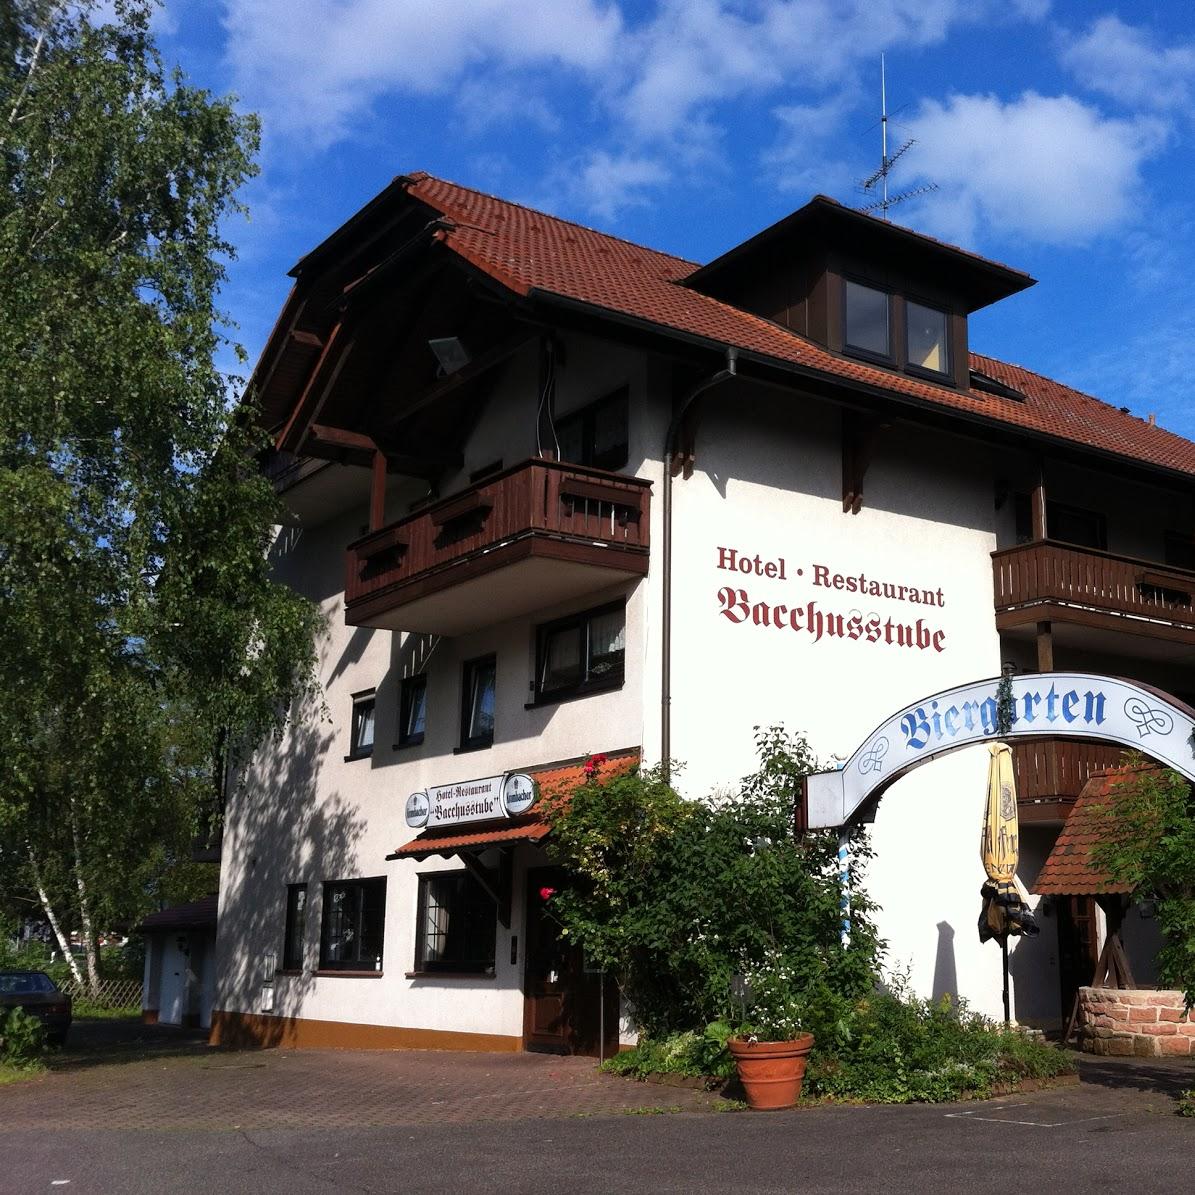 Restaurant "Hotel Bacchusstube garni" in Goldbach